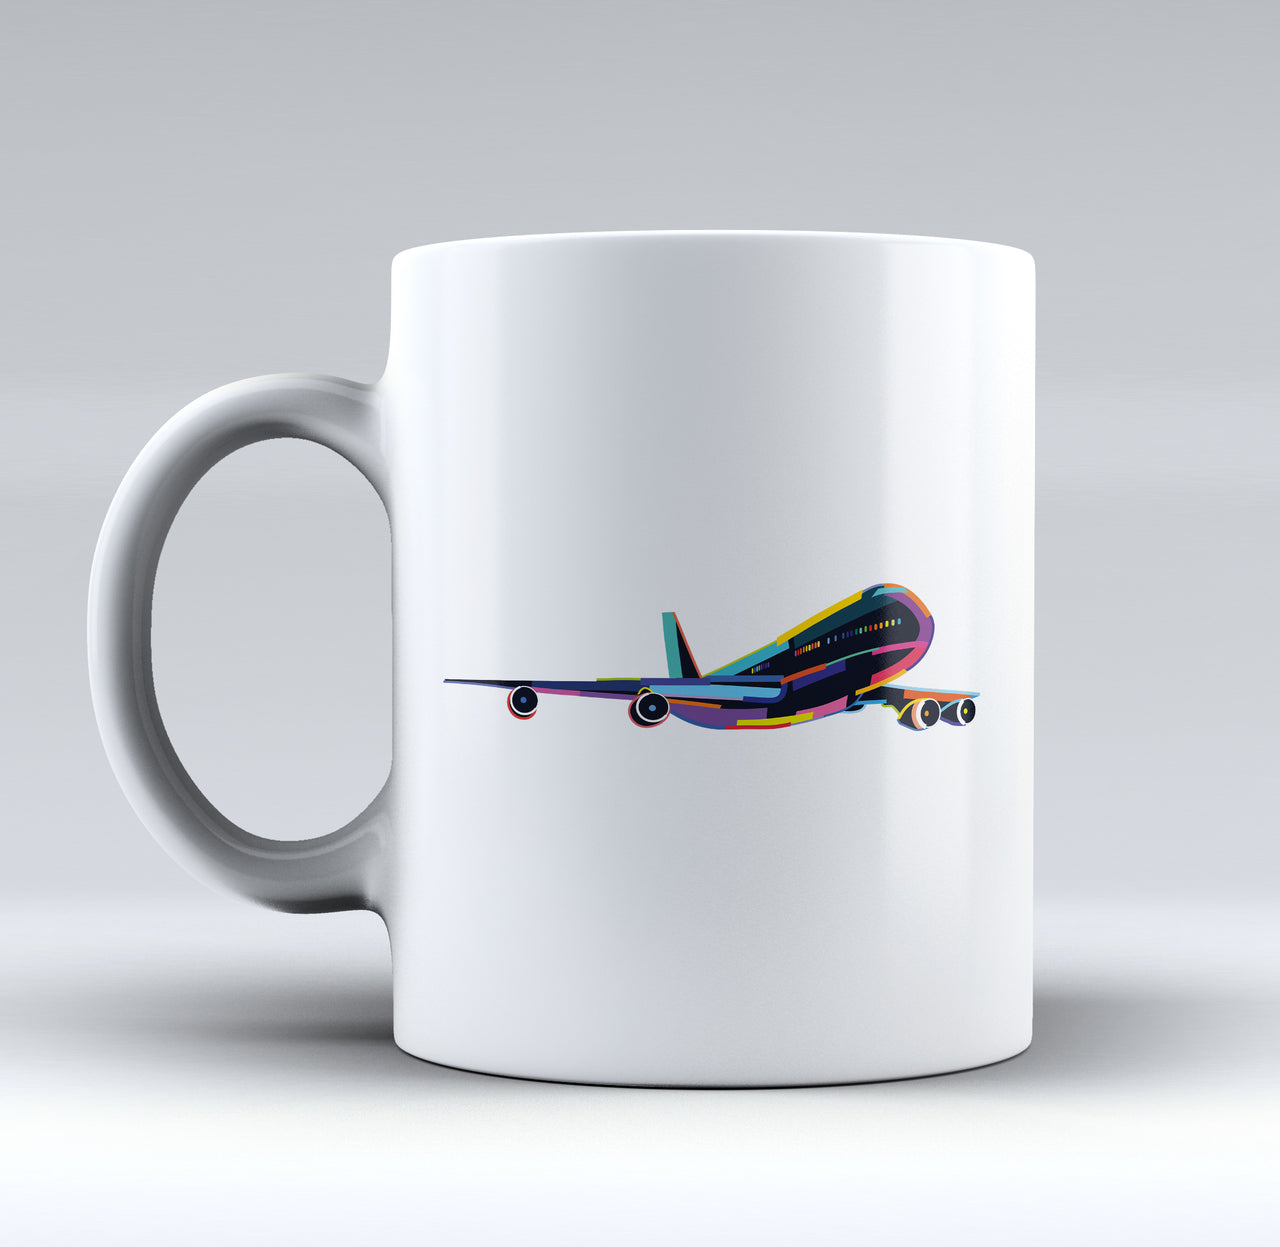 Multicolor Airplane Designed Mugs